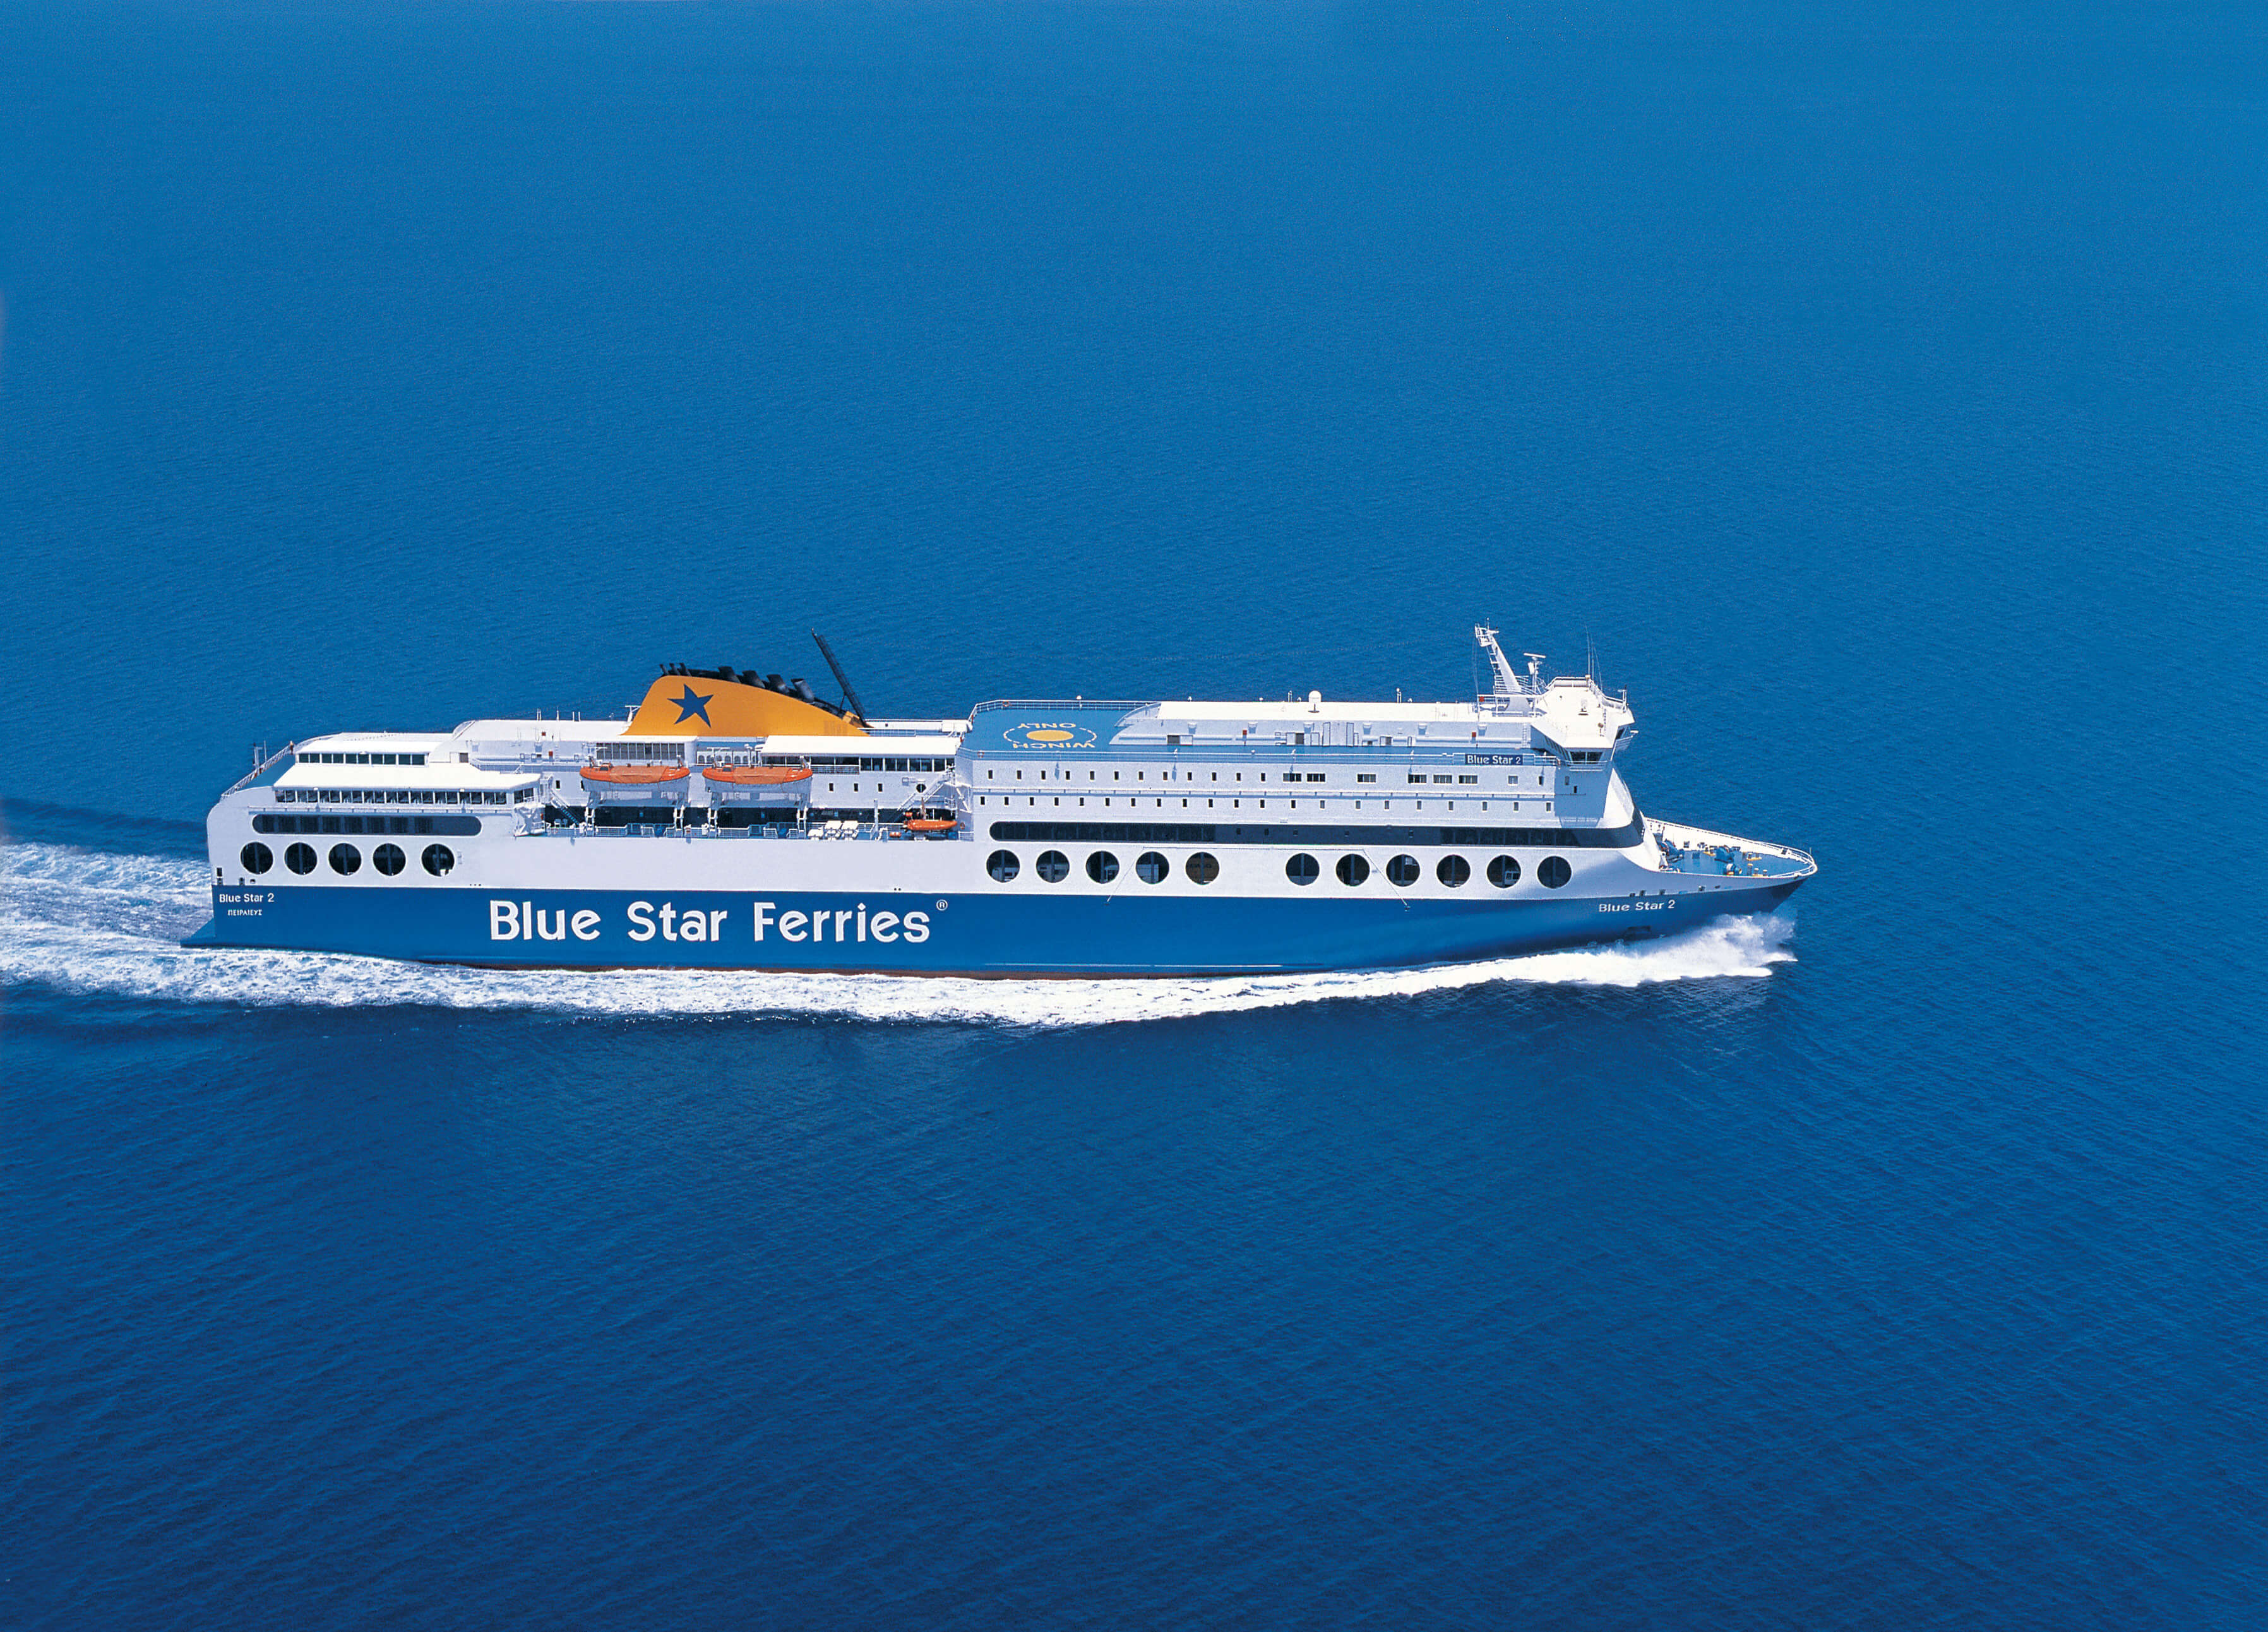 Ζήστε την εμπειρία Blue Star Ferries… γιατί οι διακοπές σας ξεκινούν από το πλοίο!